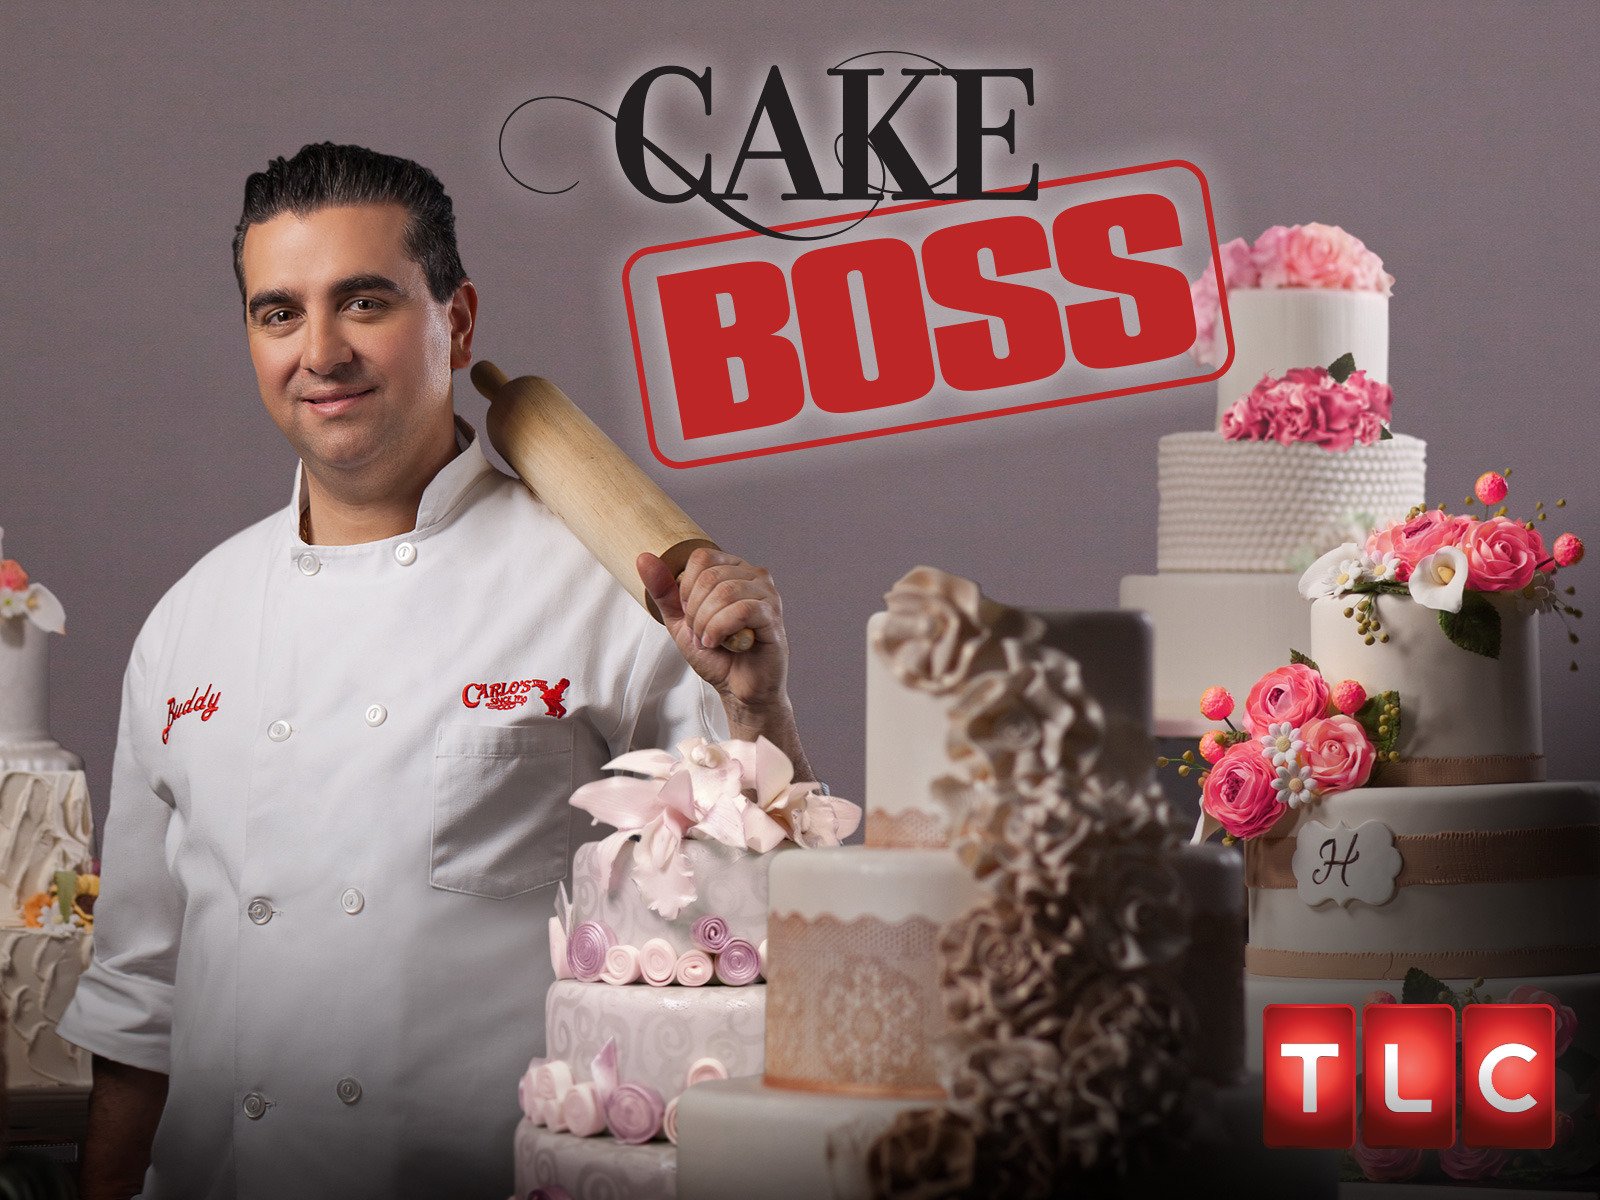 Cake Boss Season 10 Episode 1 Watch Online